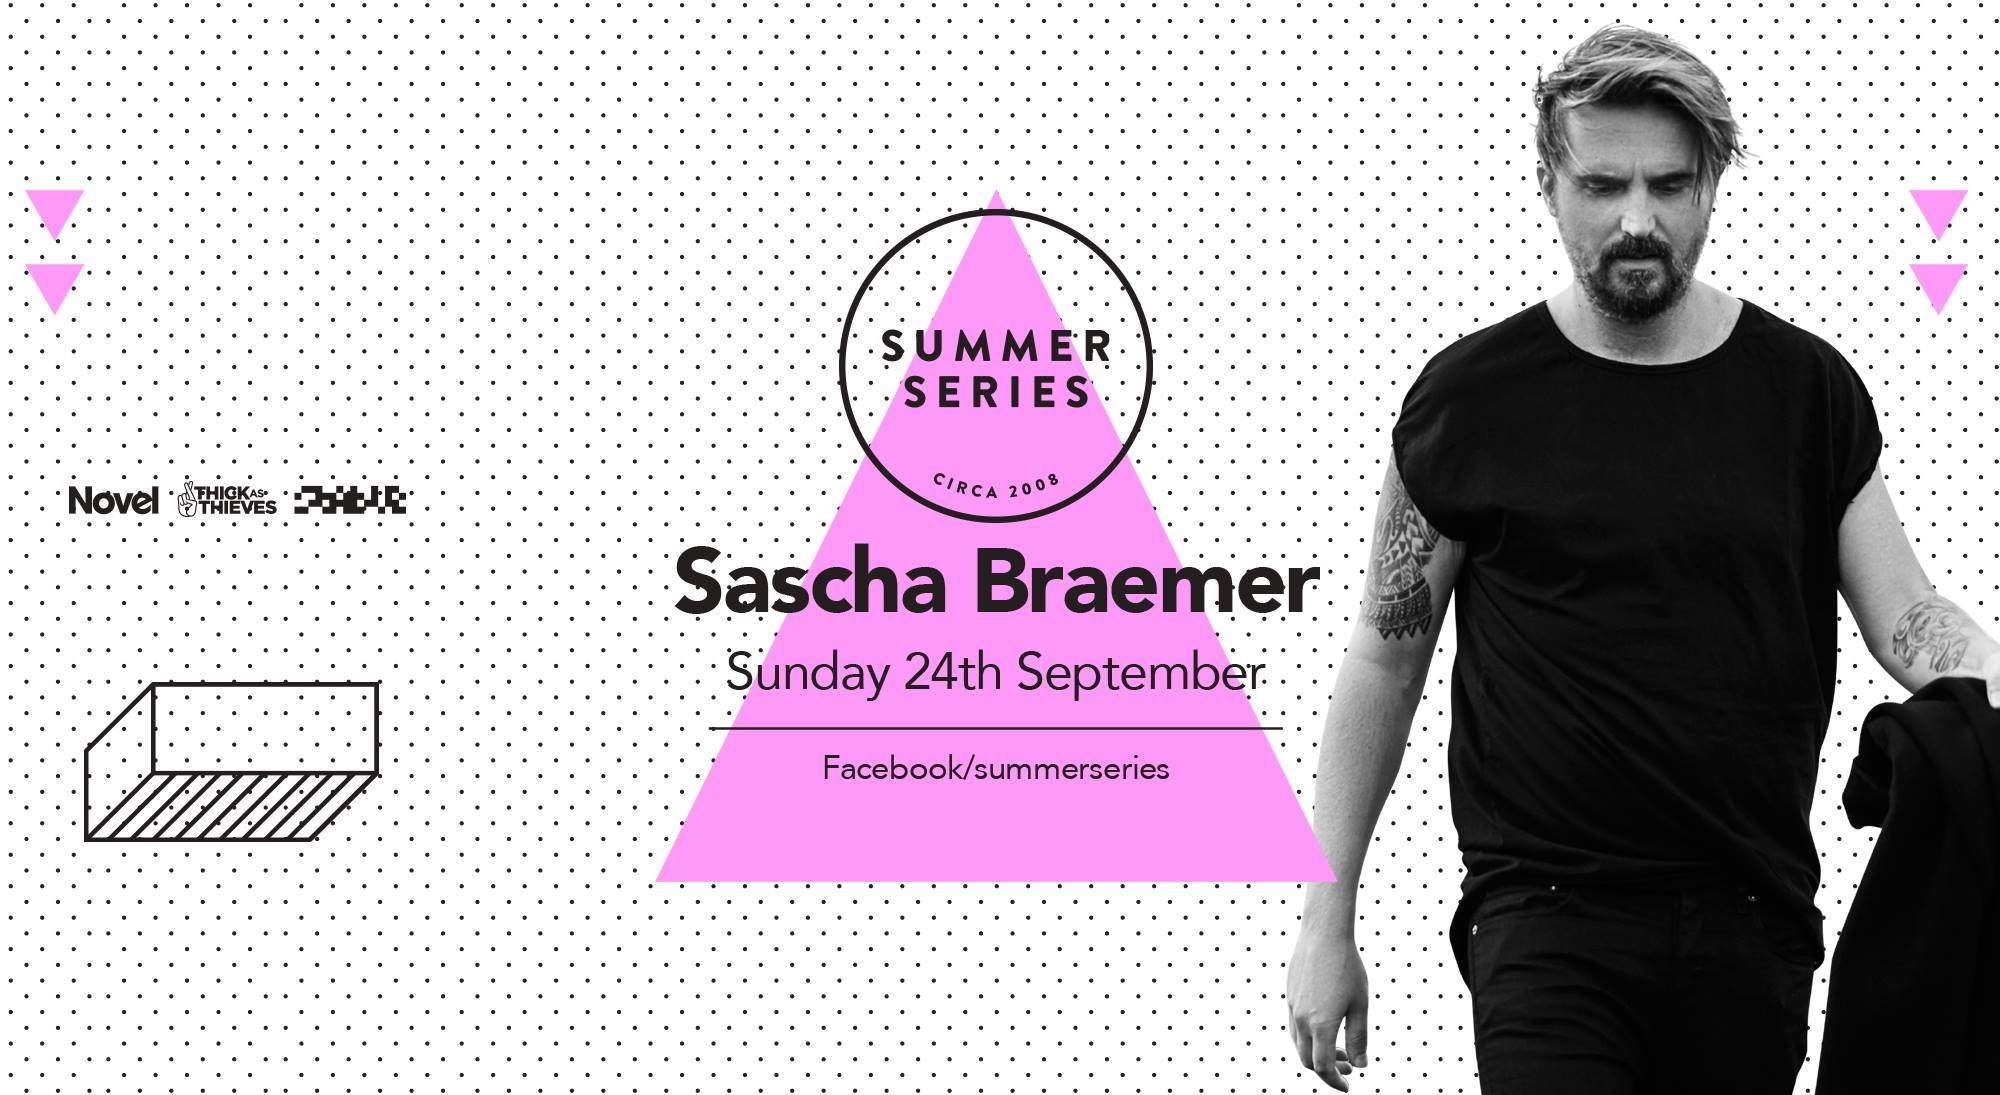 Summer Series with Sascha Braemer - Página frontal